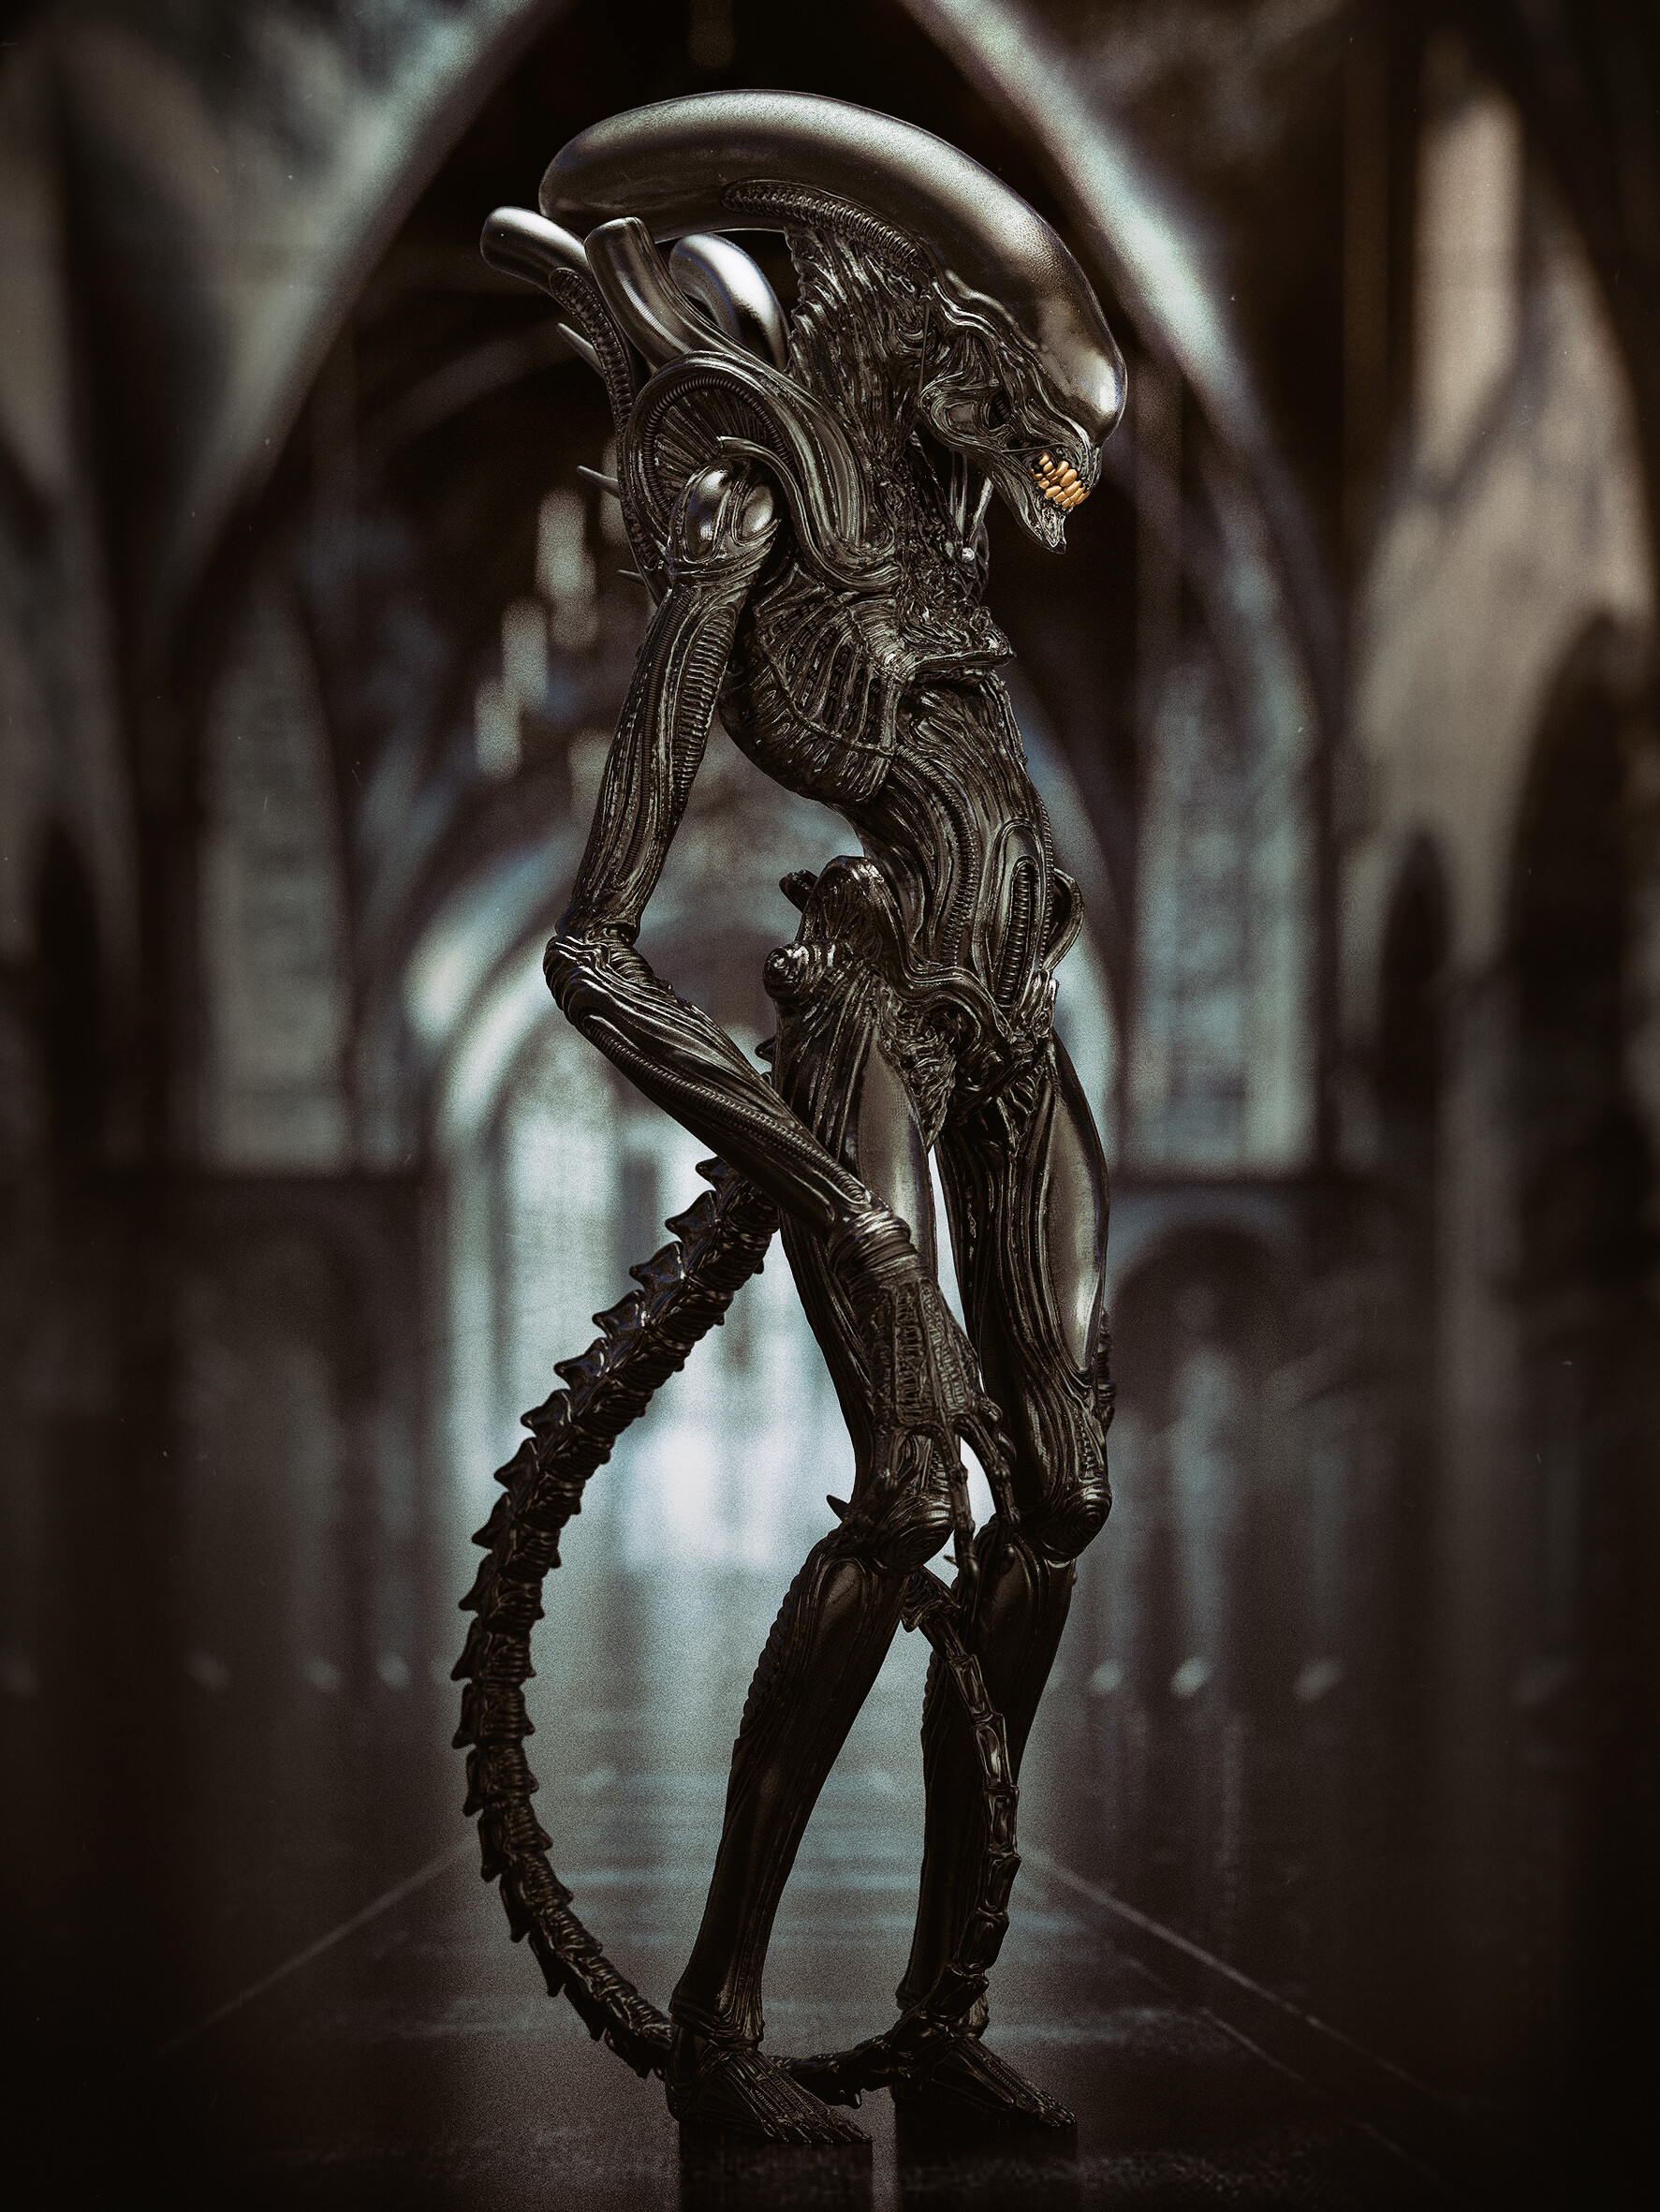 General 1773x2362 Maarten Verhoeven ArtStation creature aliens Xenomorph science fiction horror movie characters